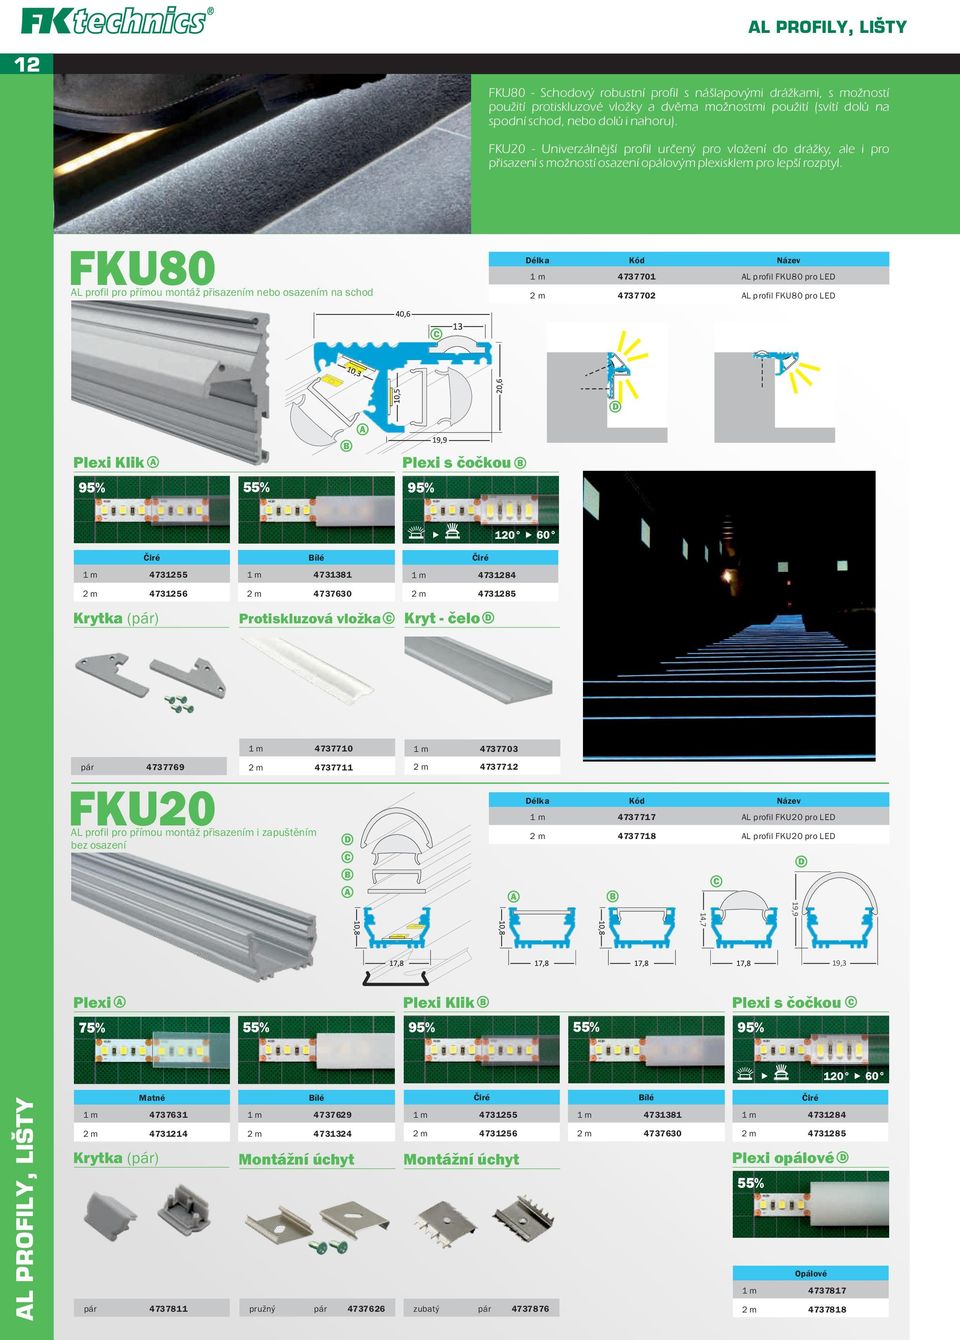 FKU80 AL profil pro přímou montáž přisazením nebo osazením na schod 1 m 4737701 AL profil FKU80 pro LED 2 m 4737702 AL profil FKU80 pro LED C D Plexi Klik A 95% 55% 95% A Plexi s čočkou 1 m 4731255 1